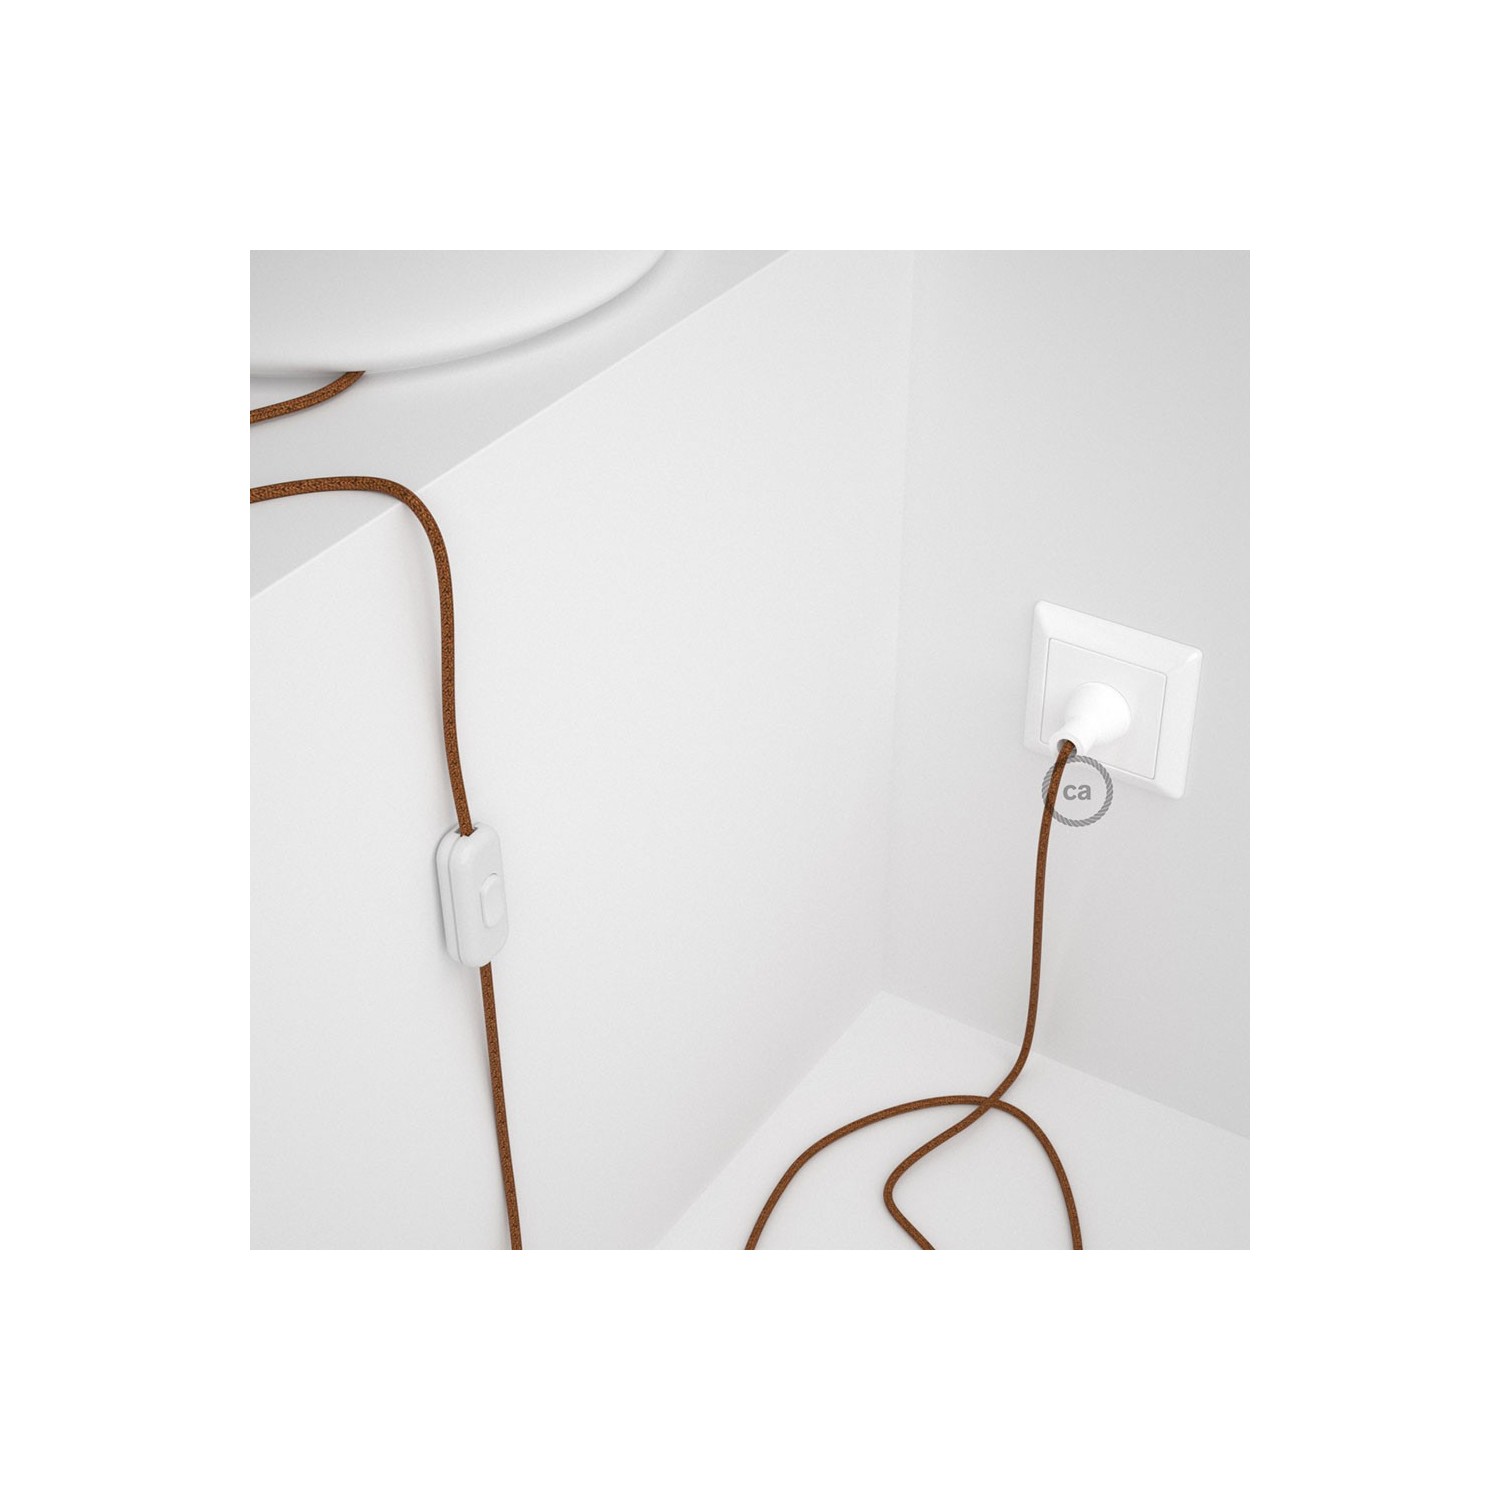 Cableado para lámpara de mesa, cable RL22 Rayón Brillante Cobre 1,8 m. Elige el color de la clavija y del interruptor!